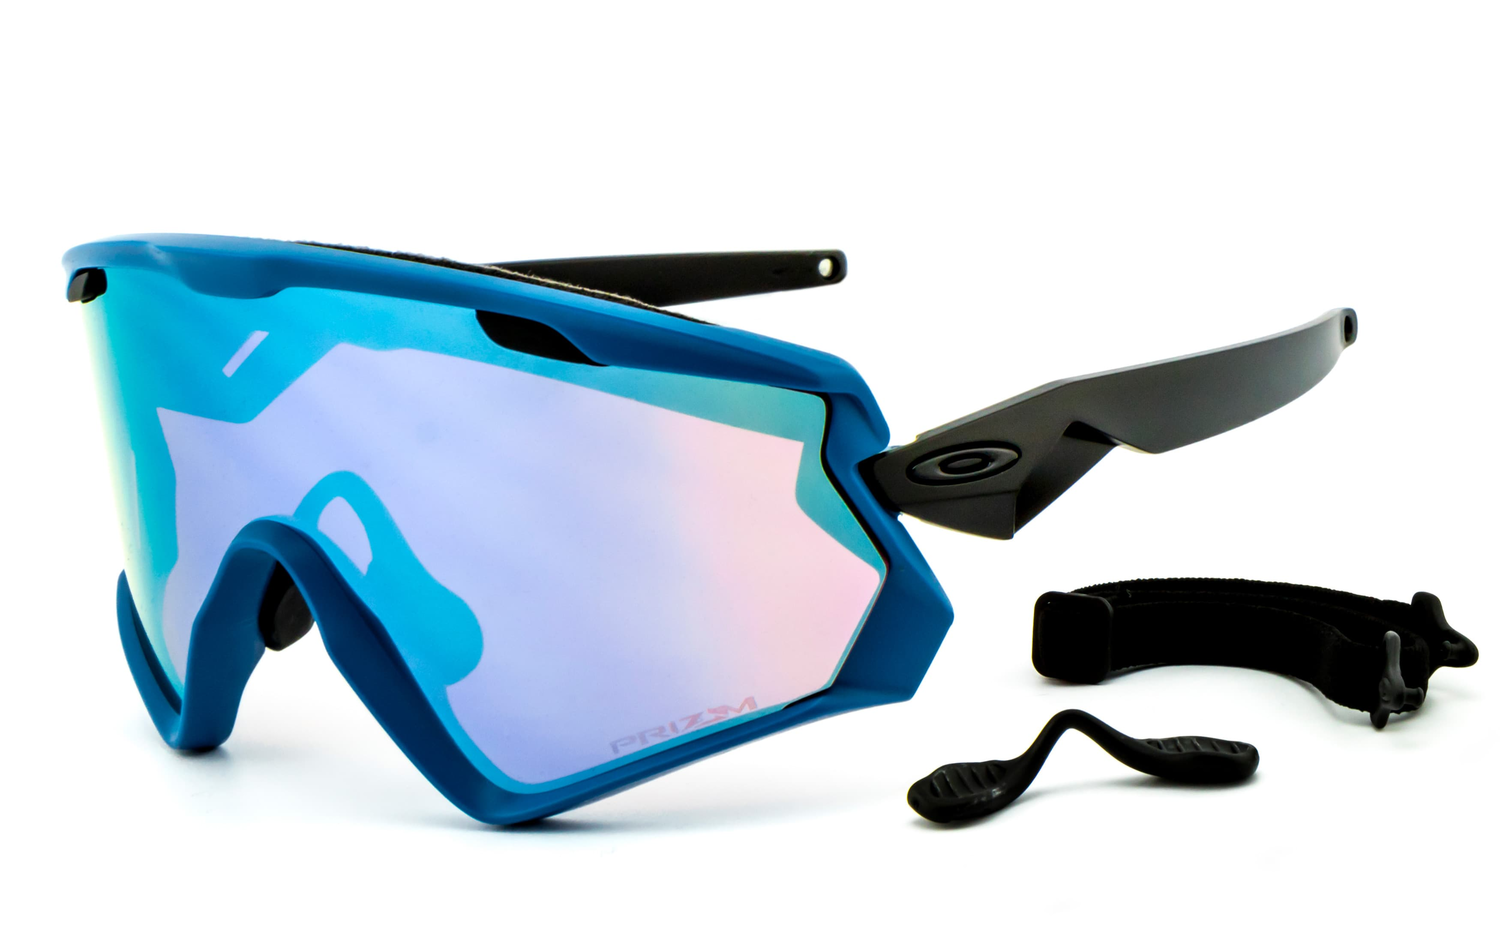 OAKLEY | Wind Jacket® 2.0 Snow Sunglasses - OO7072  Sportbrille, Fahrradbrille, Sonnenbrille, Bikerbrille, Radbrille, UV400 Schutzfilter